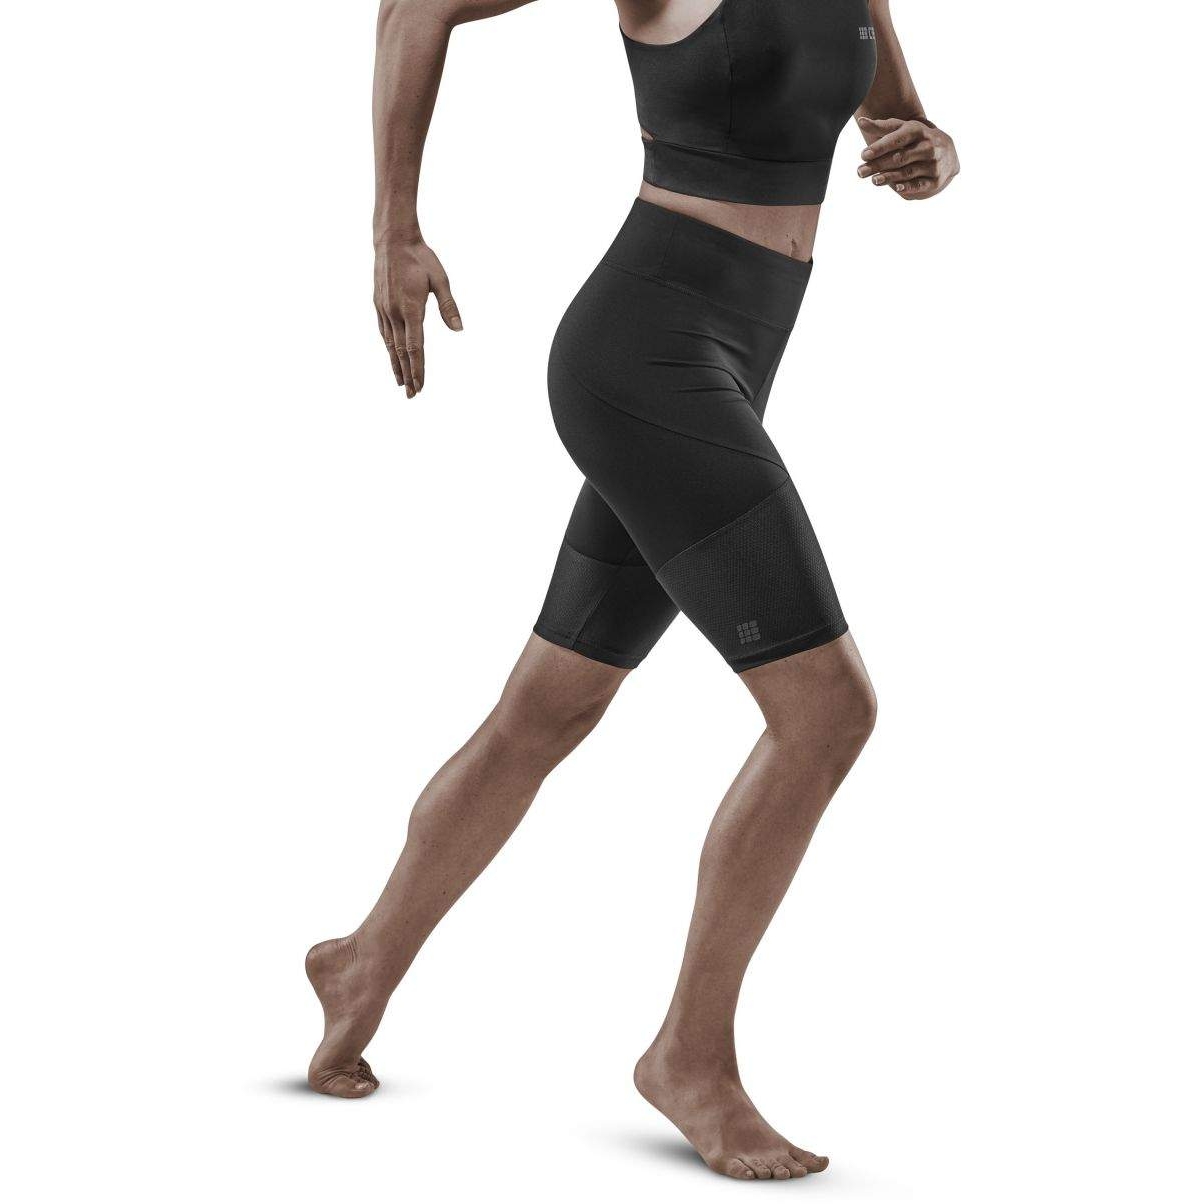 Produktbild von CEP Ultralight Shorts Damen - schwarz